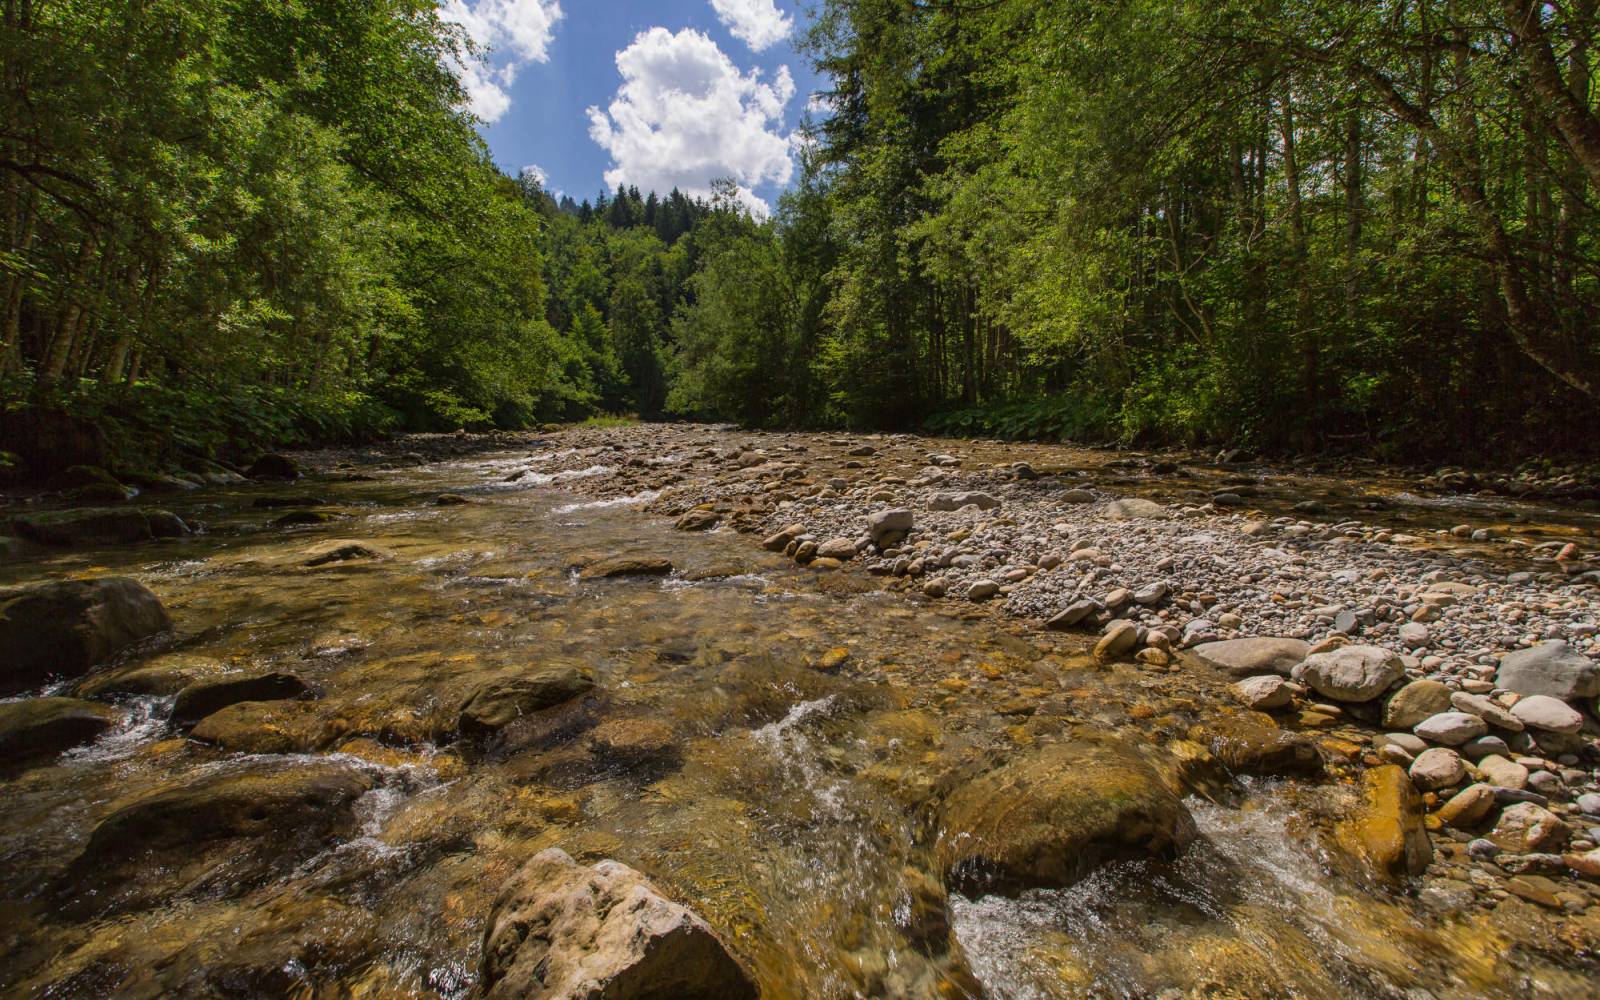 Ausser im Unterlauf bahnt sich das Wasser des Wissbachs seinen Weg frei durch dichte Wälder und unwegsame Schluchten.